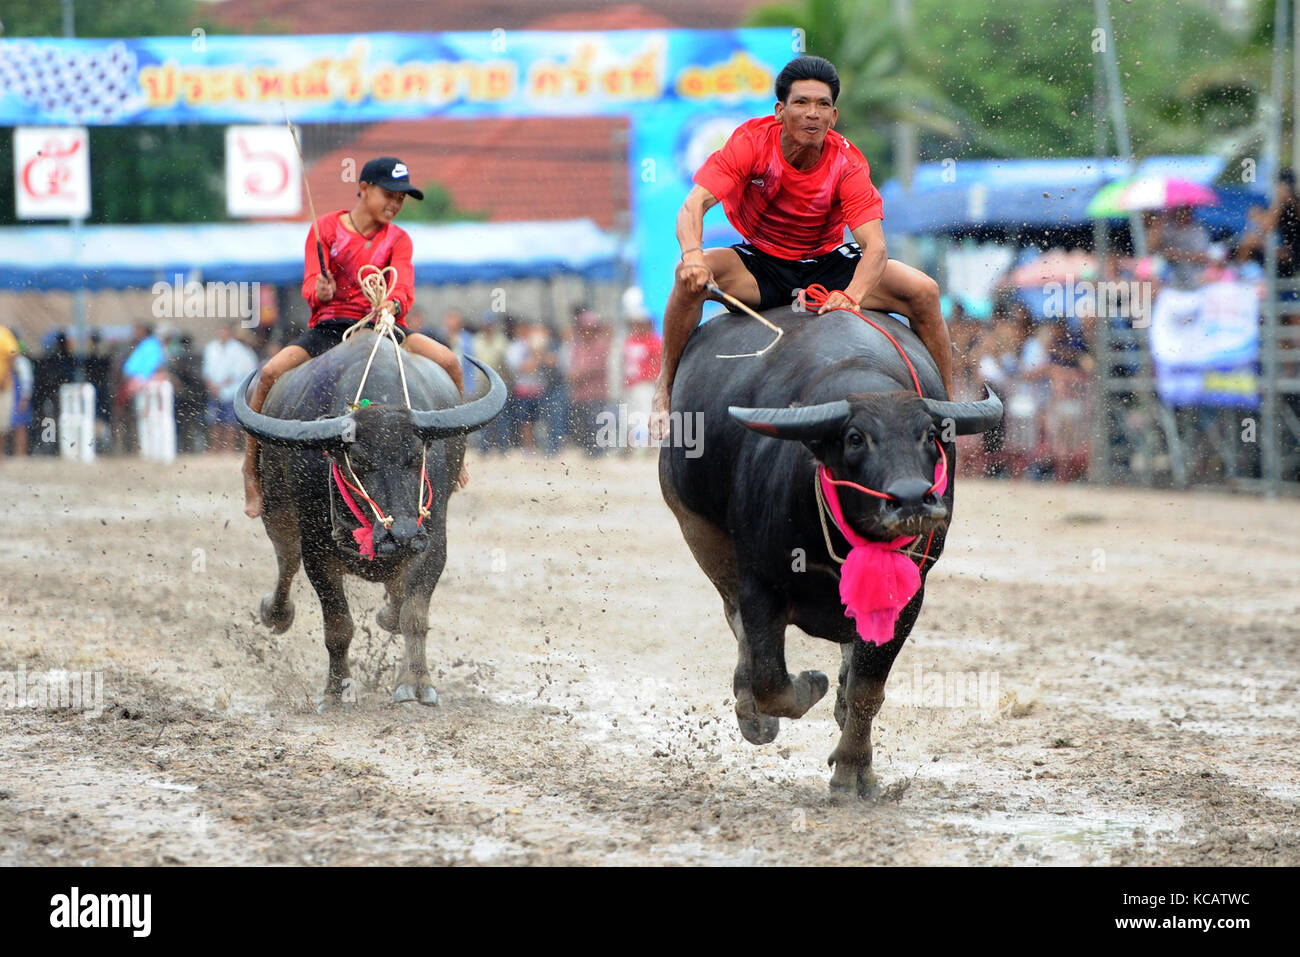 Chonburi, Thailand. 4. Oktober 2017. Racers während einer jährlichen Buffalo racing in Chonburi, Thailand konkurrieren. Credit: Rachen sageamsak/Xinhua/alamy leben Nachrichten Stockfoto